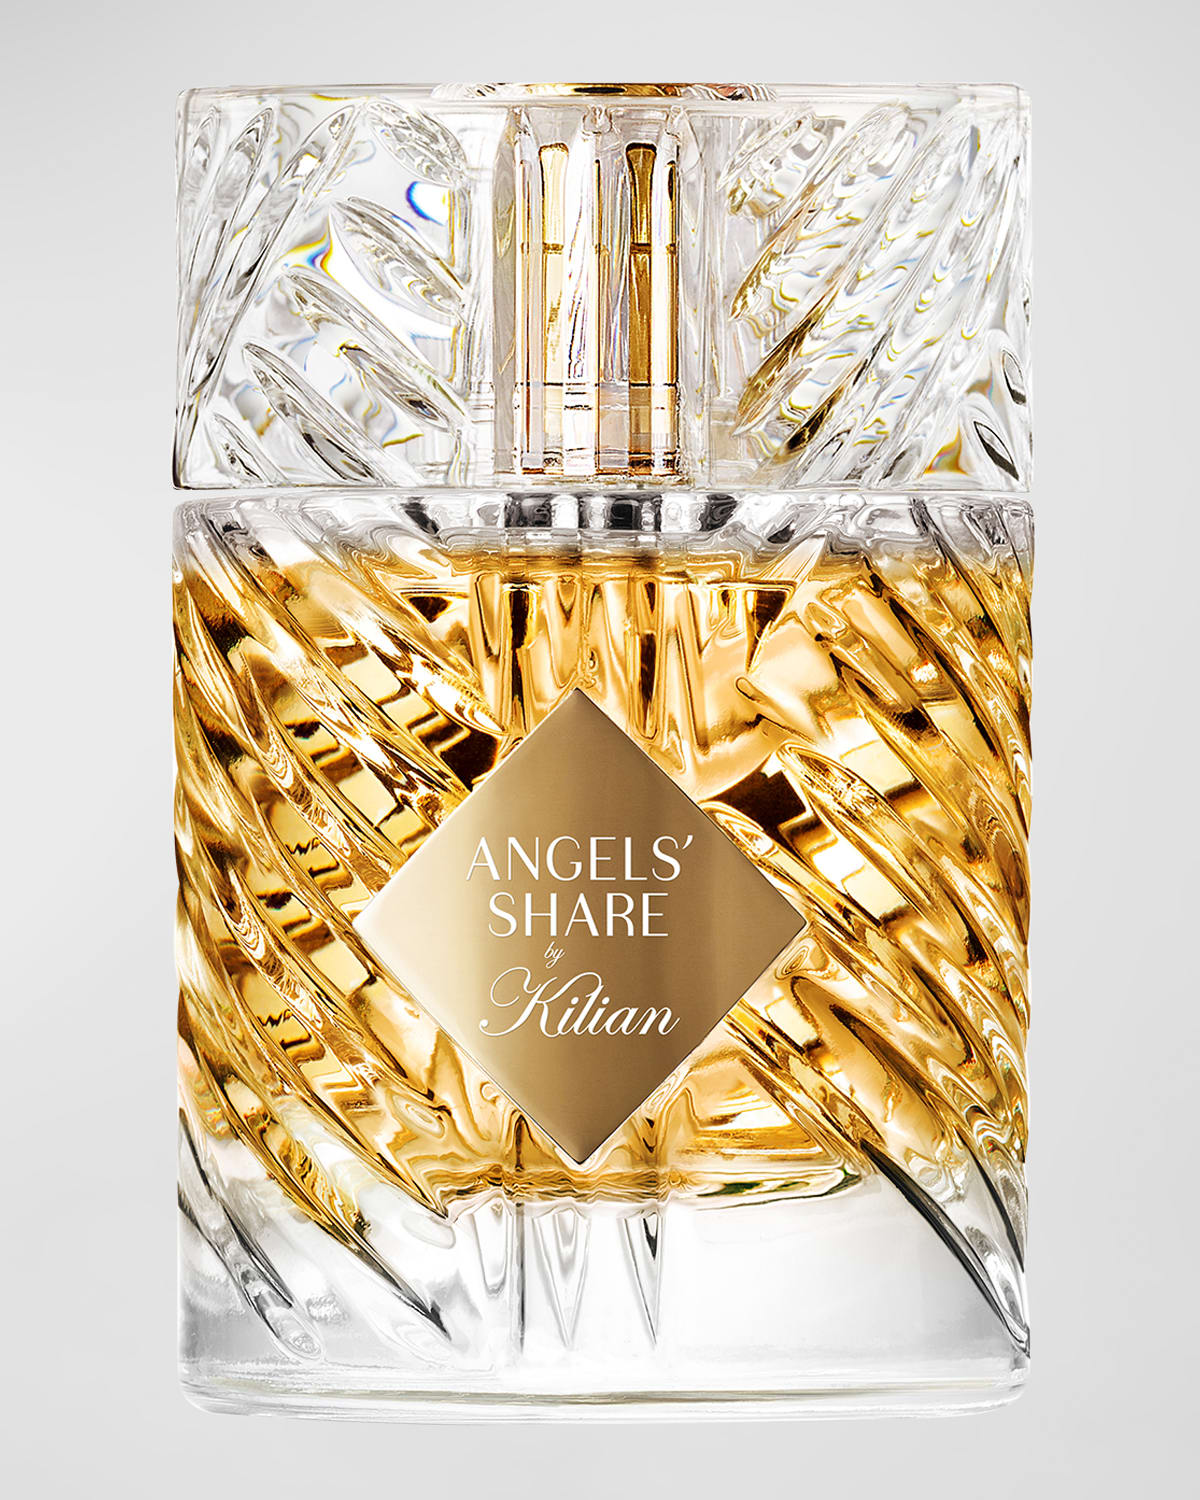 Kilian Angels' Share Eau de Parfum, 3.4 oz.